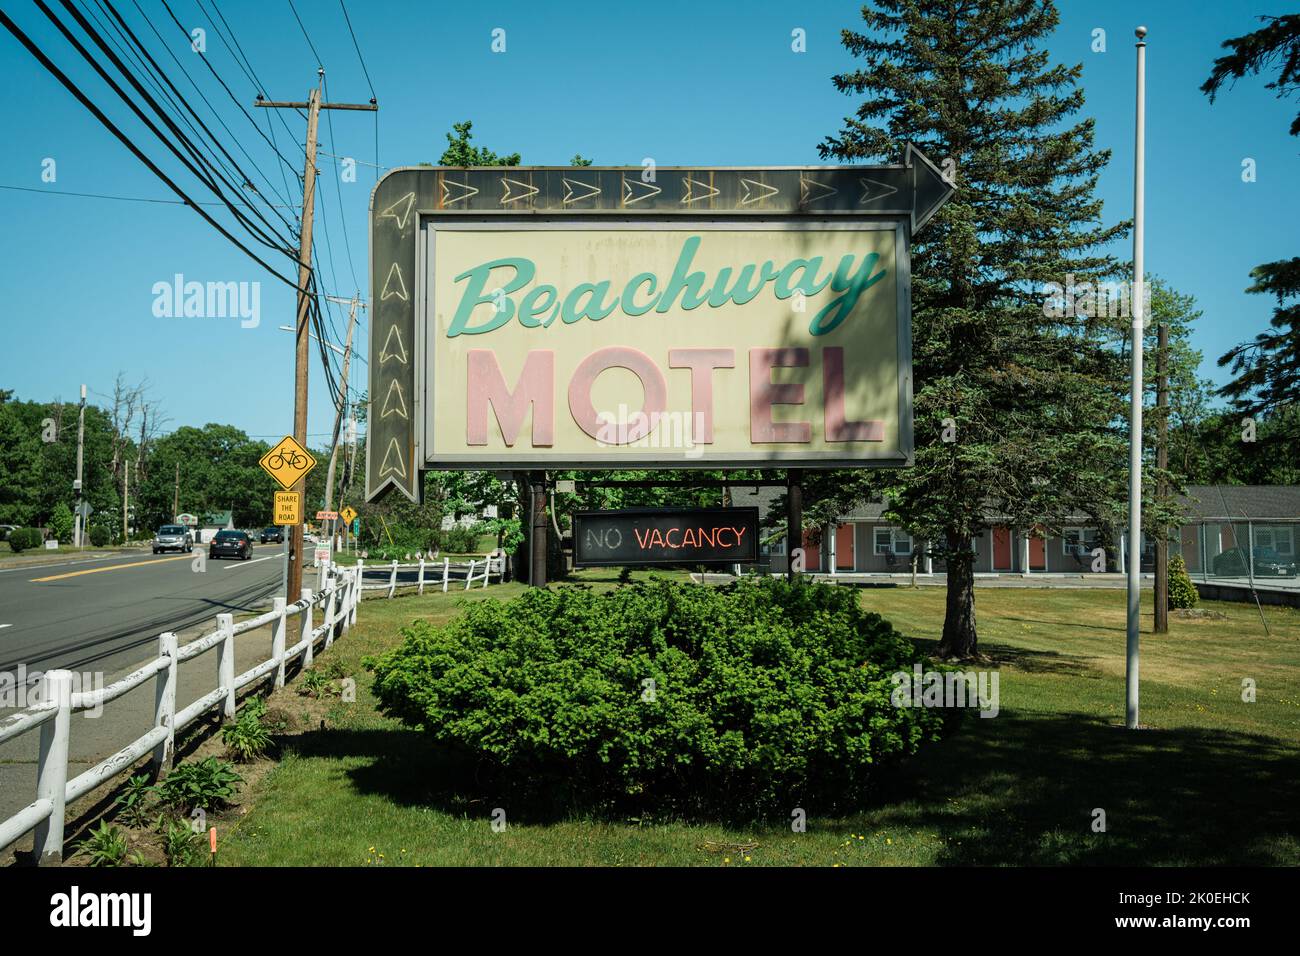 Beachway Motel vintage sign, Salisbury, Massachusetts Stock Photo